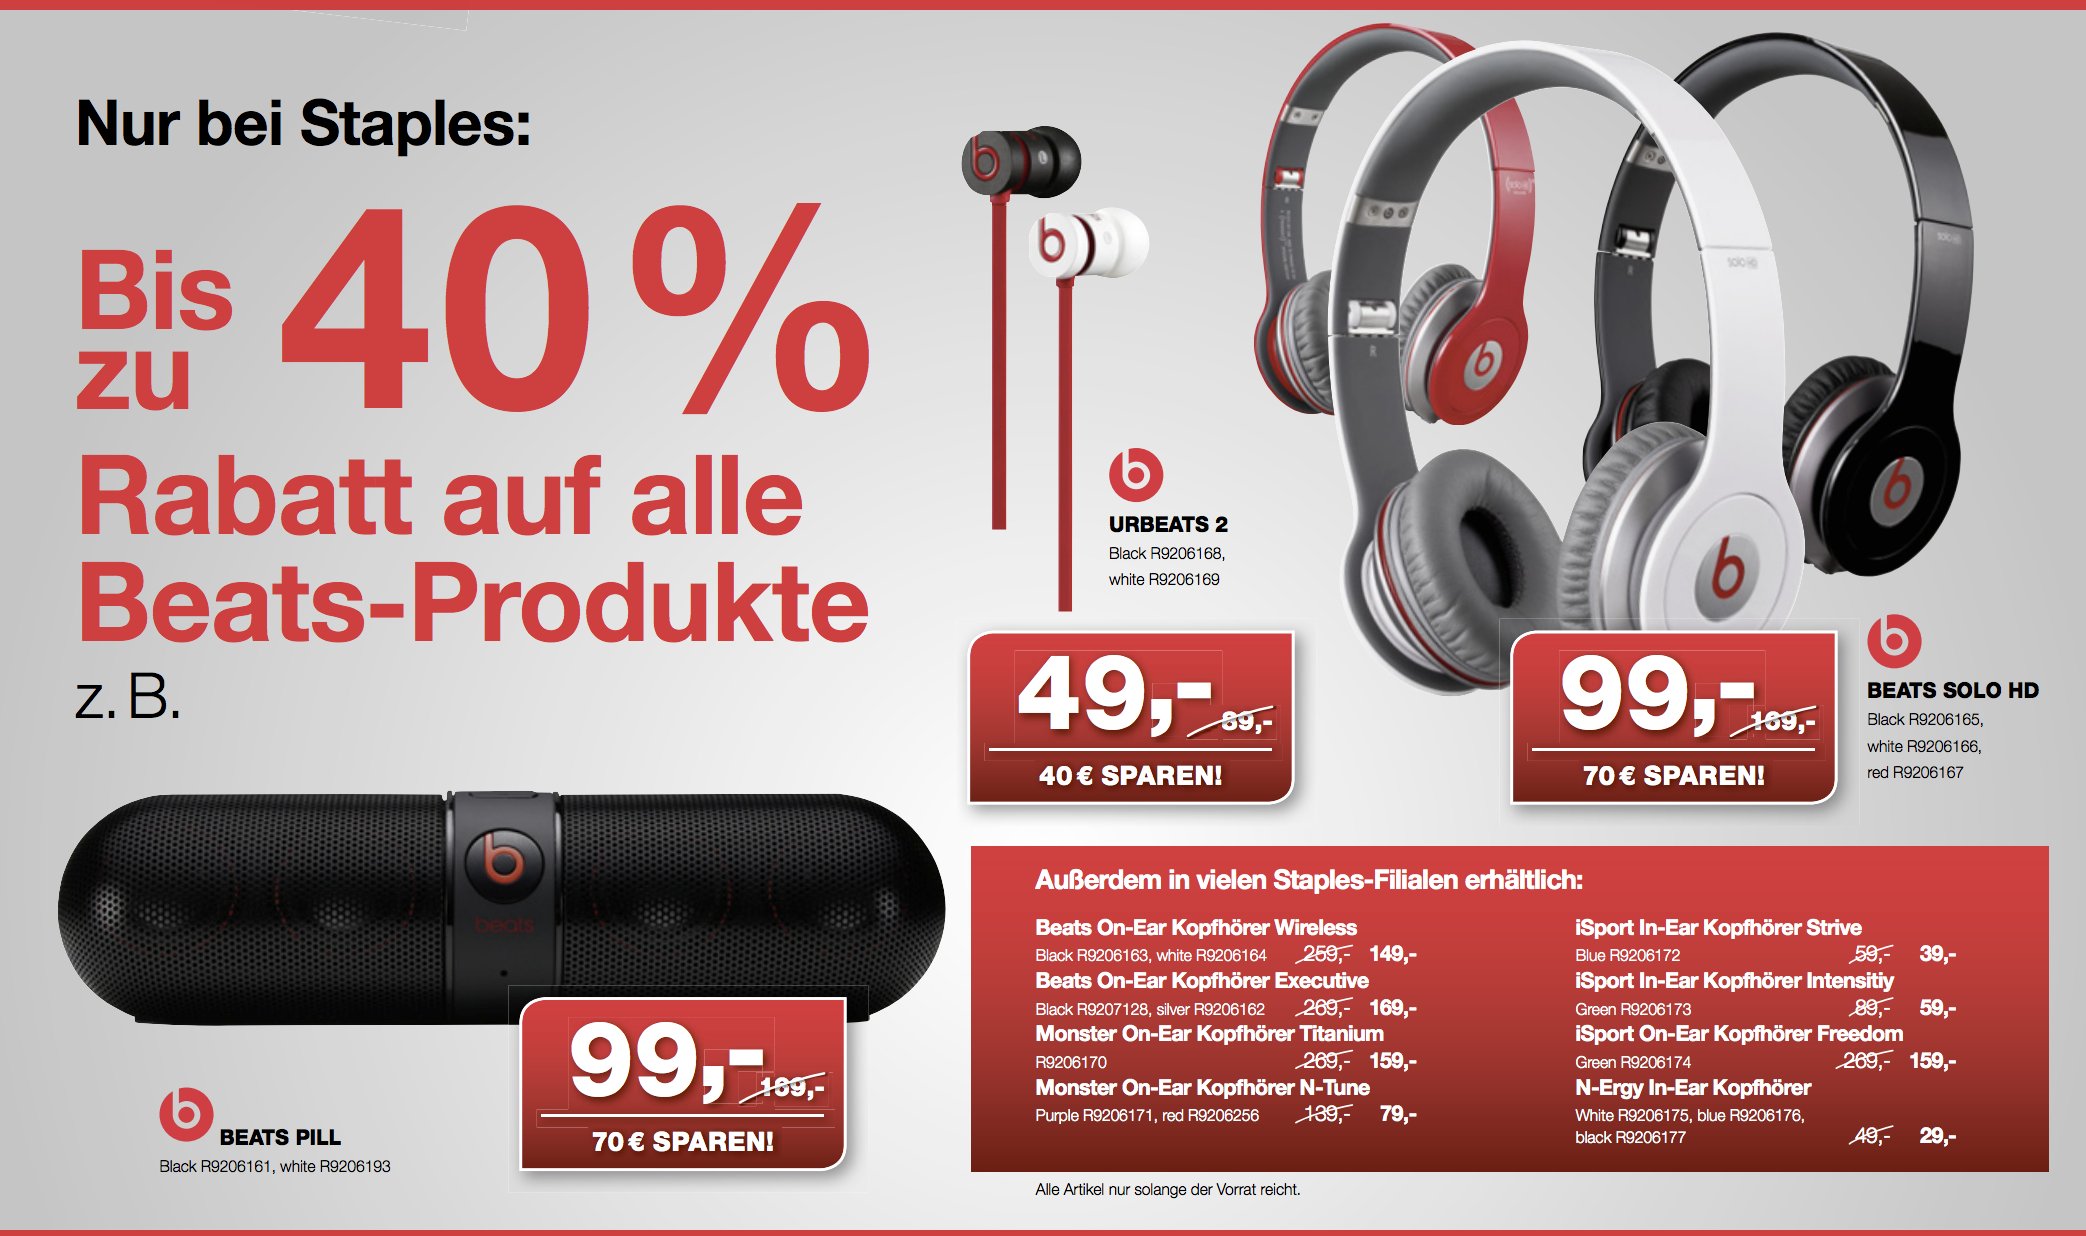 Beats bei Amazon ausverkauft - Staples mit 40 Prozent Rabatt auf alle Beats Produkte. 6